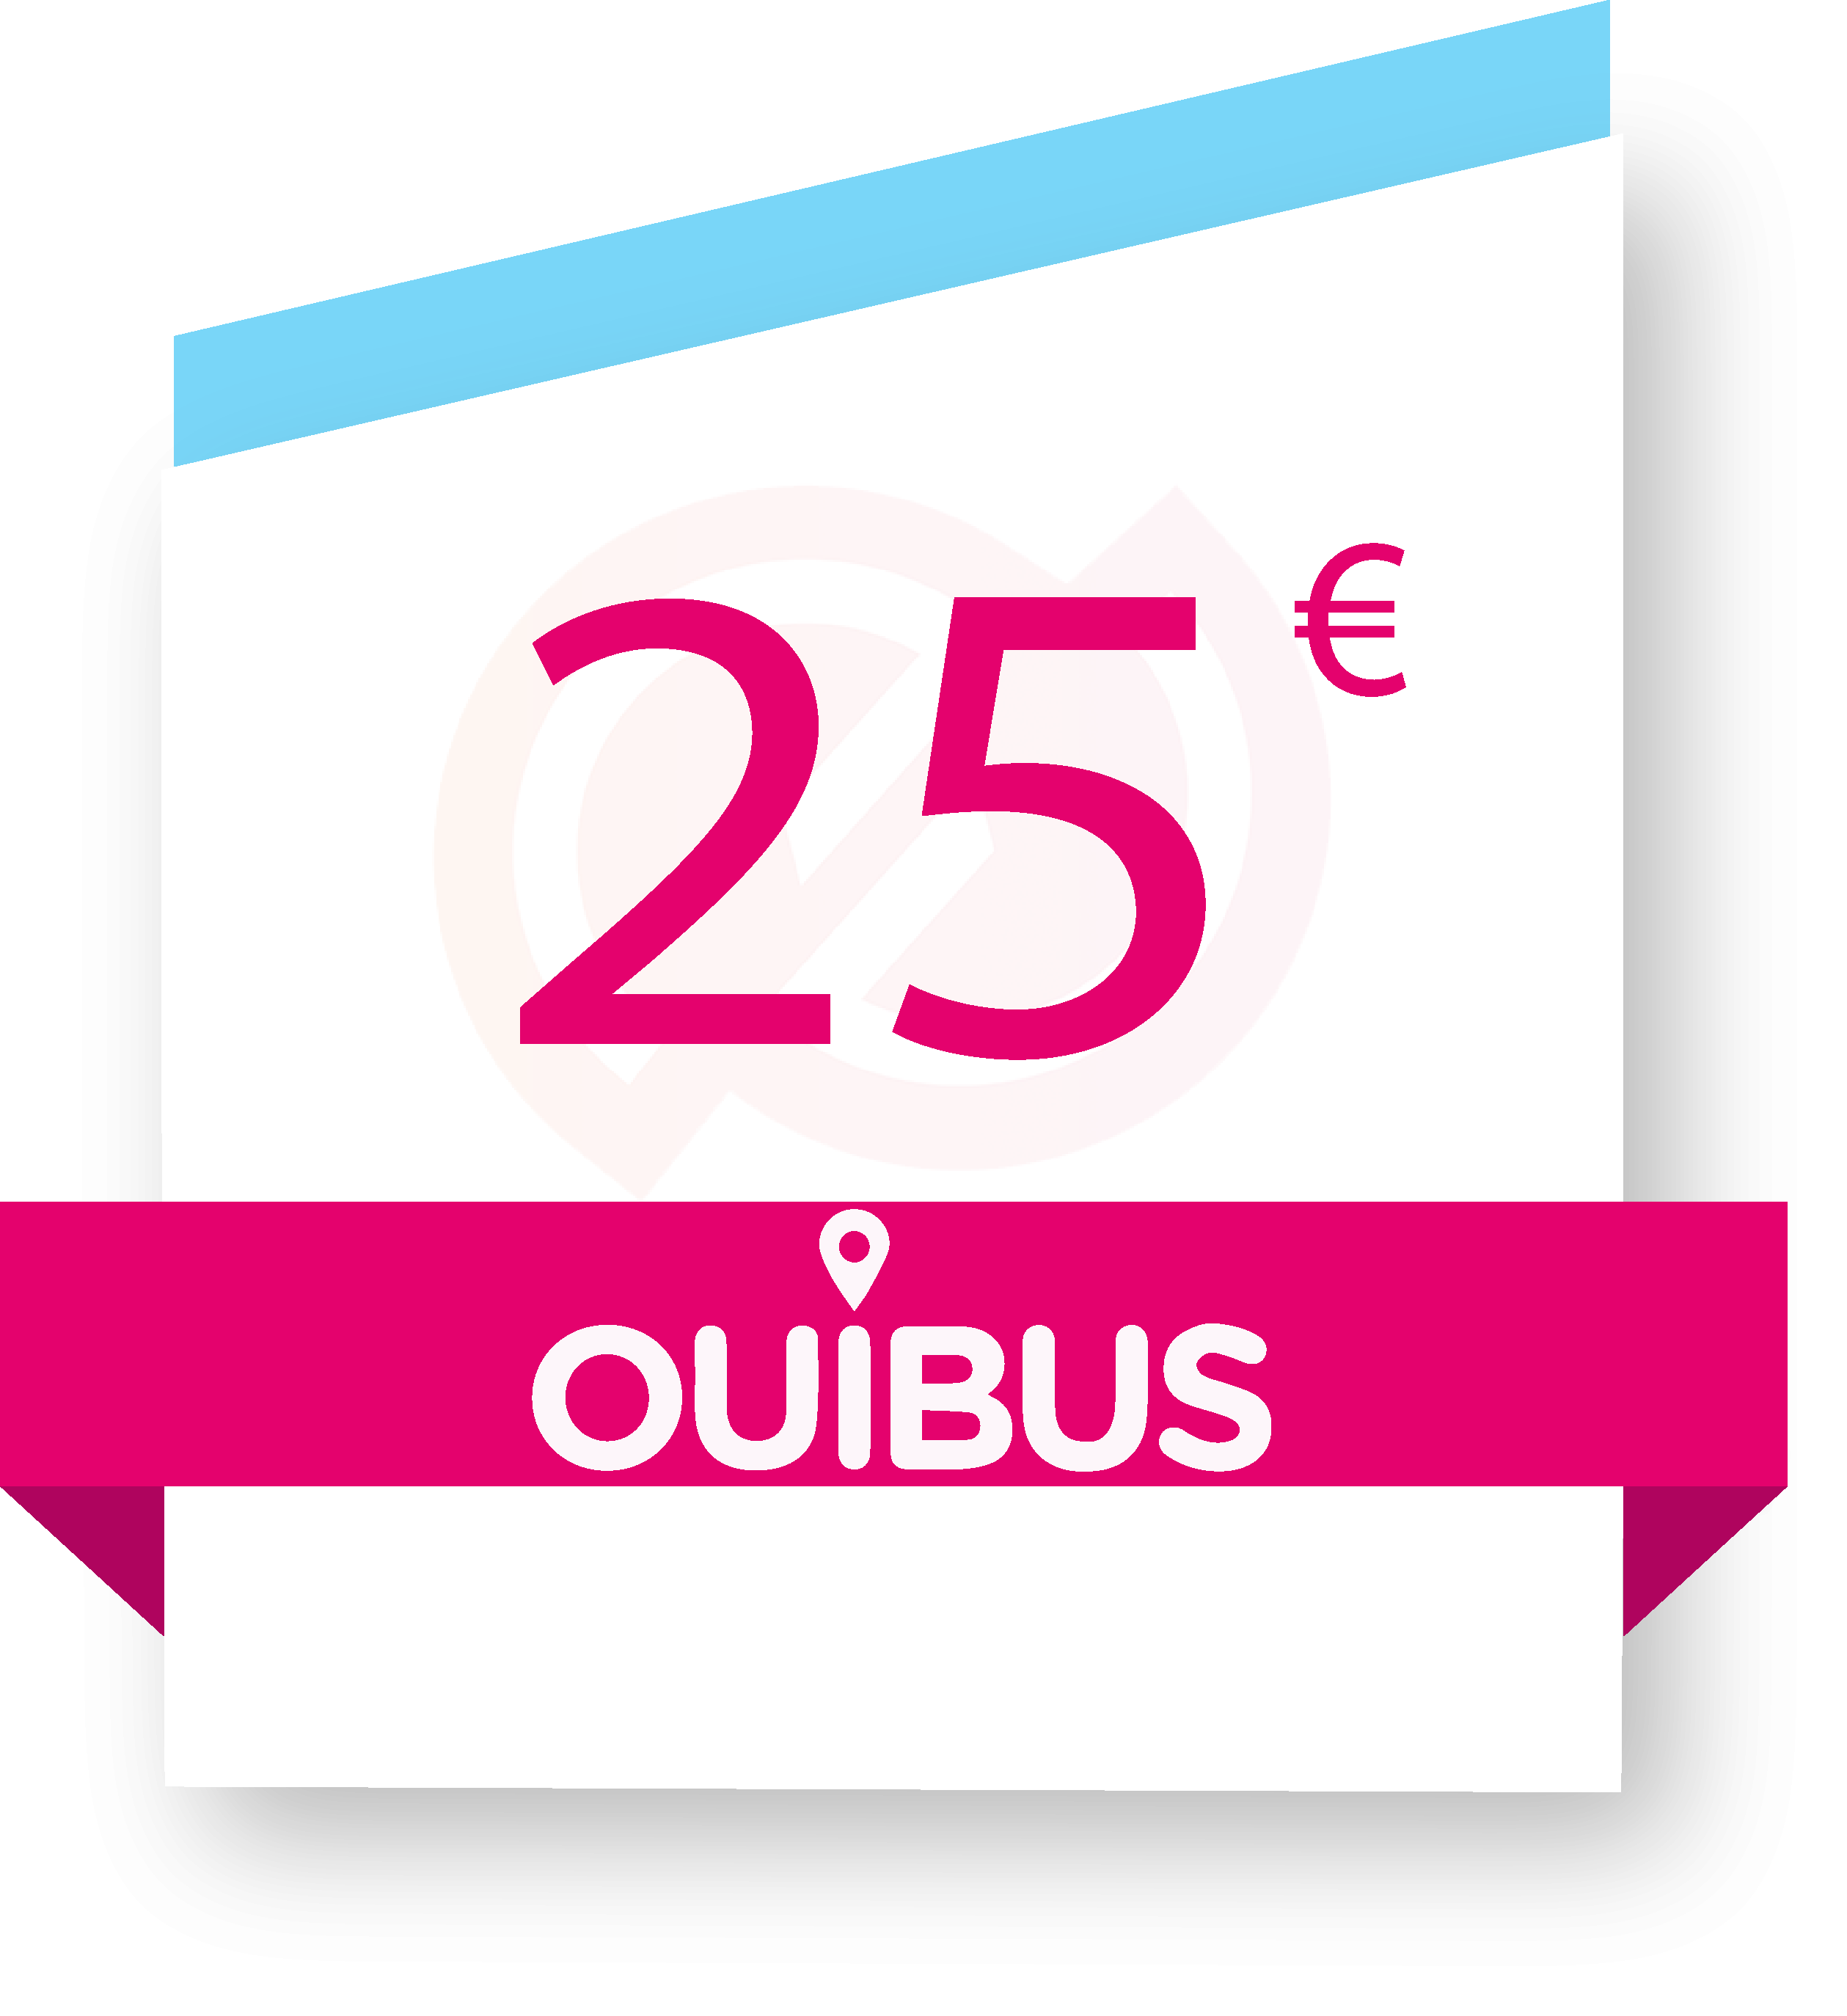 Ouibus 25€